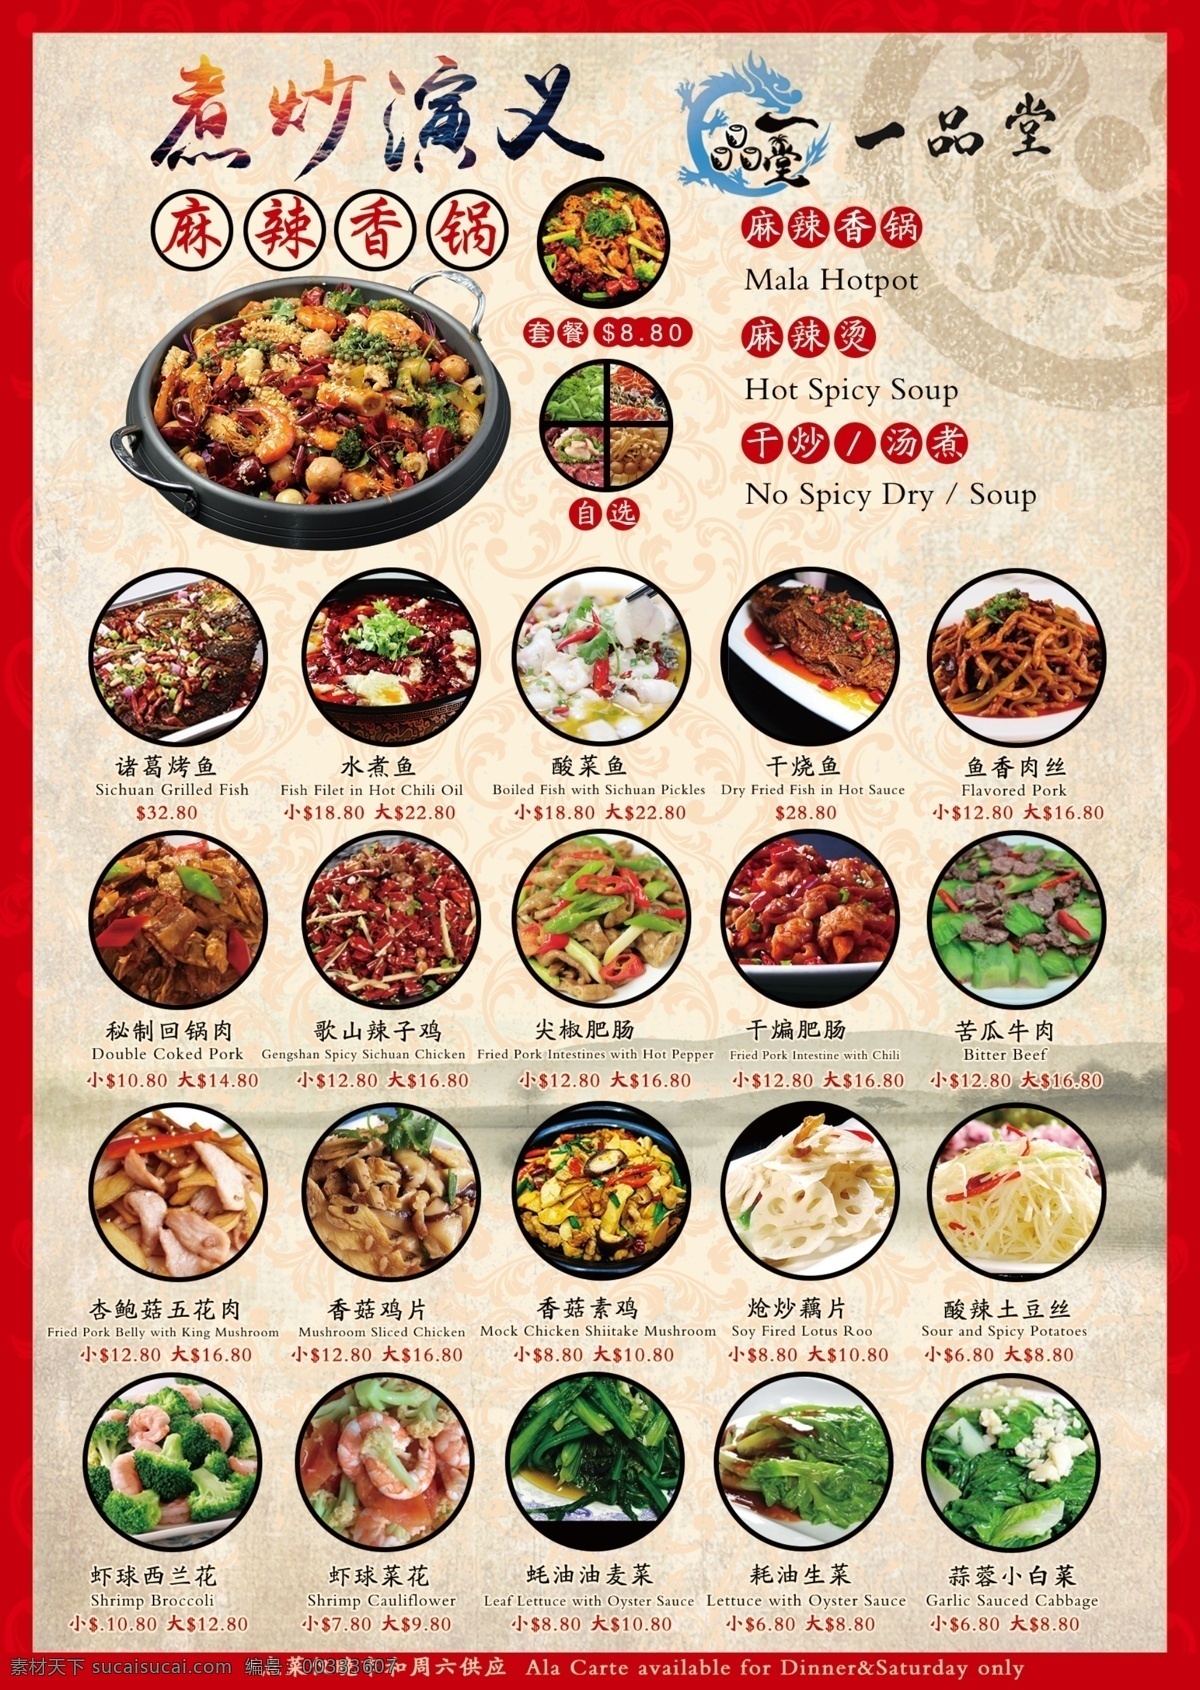 中餐 炒菜 广告宣传 海报 广告 宣传 海报免费下载 爽口小菜 黄色 驴肉 补品 中国风